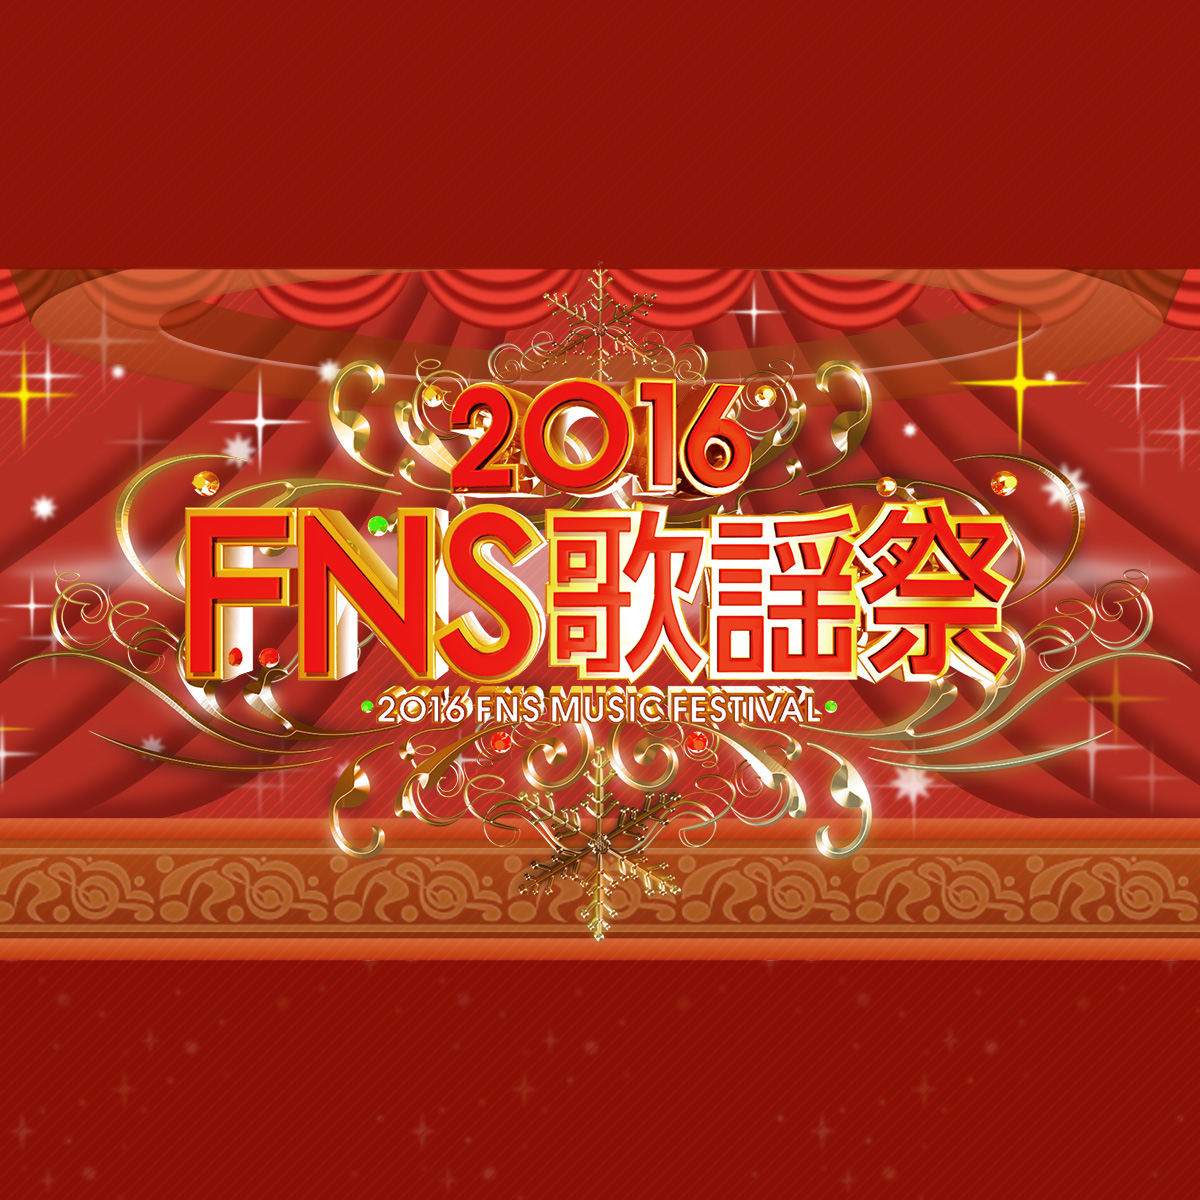 2016 FNS歌謡祭 - フジテレビ